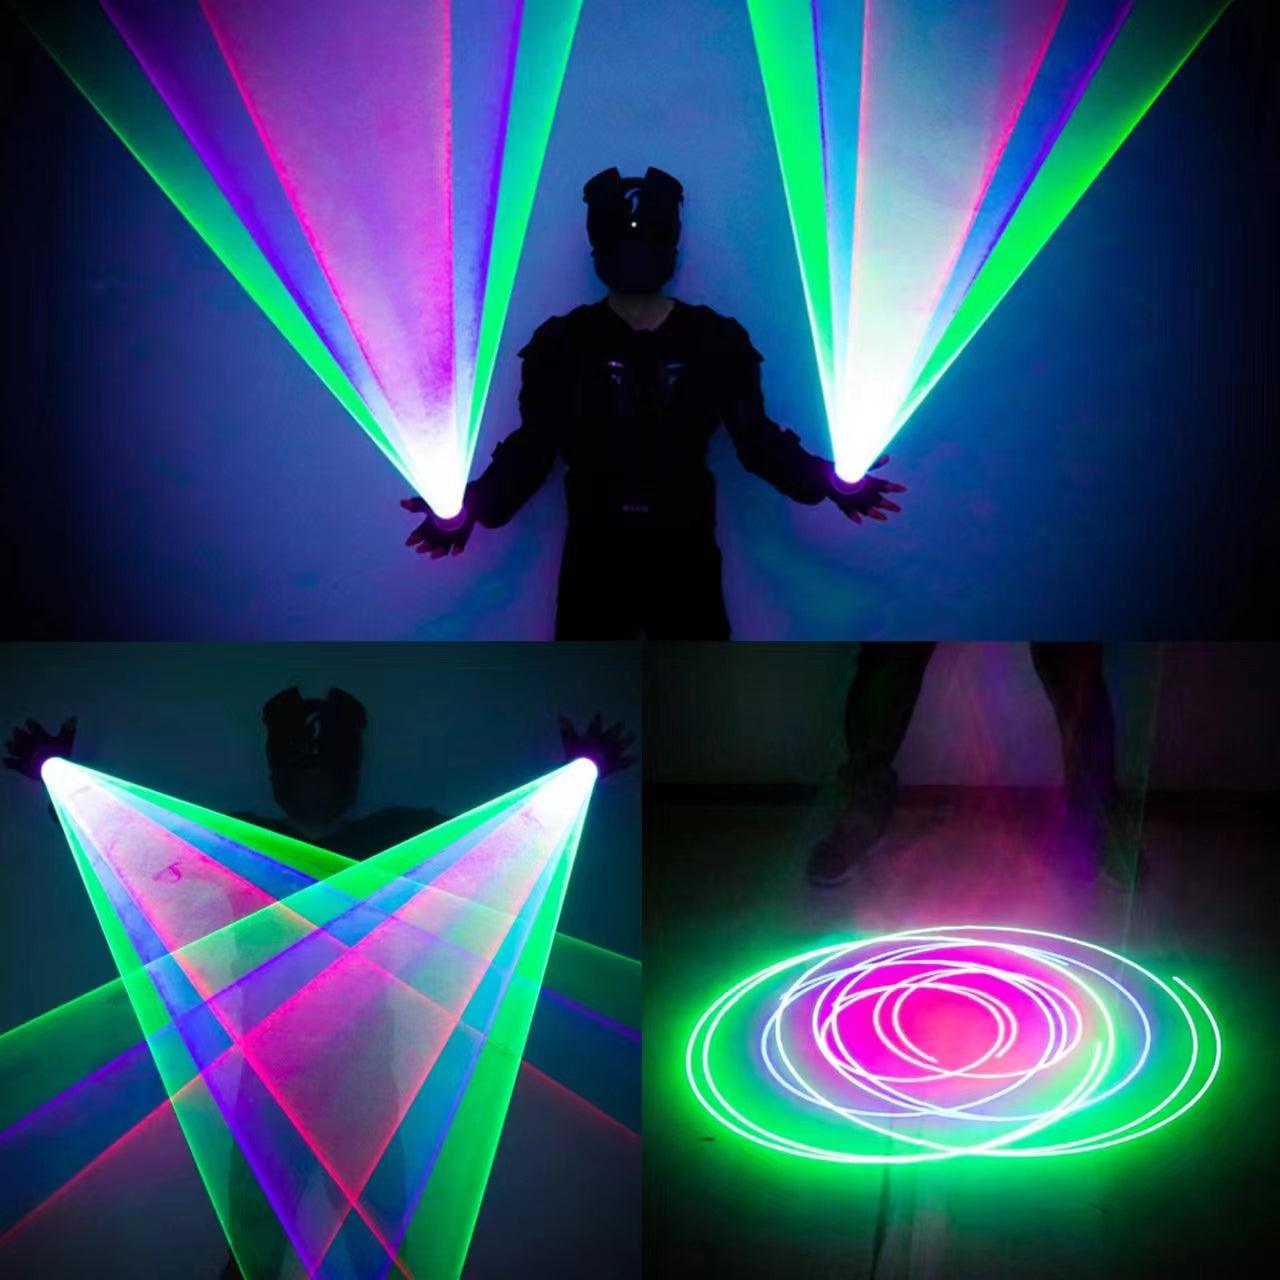 Party-Laser-Handschuh-Set